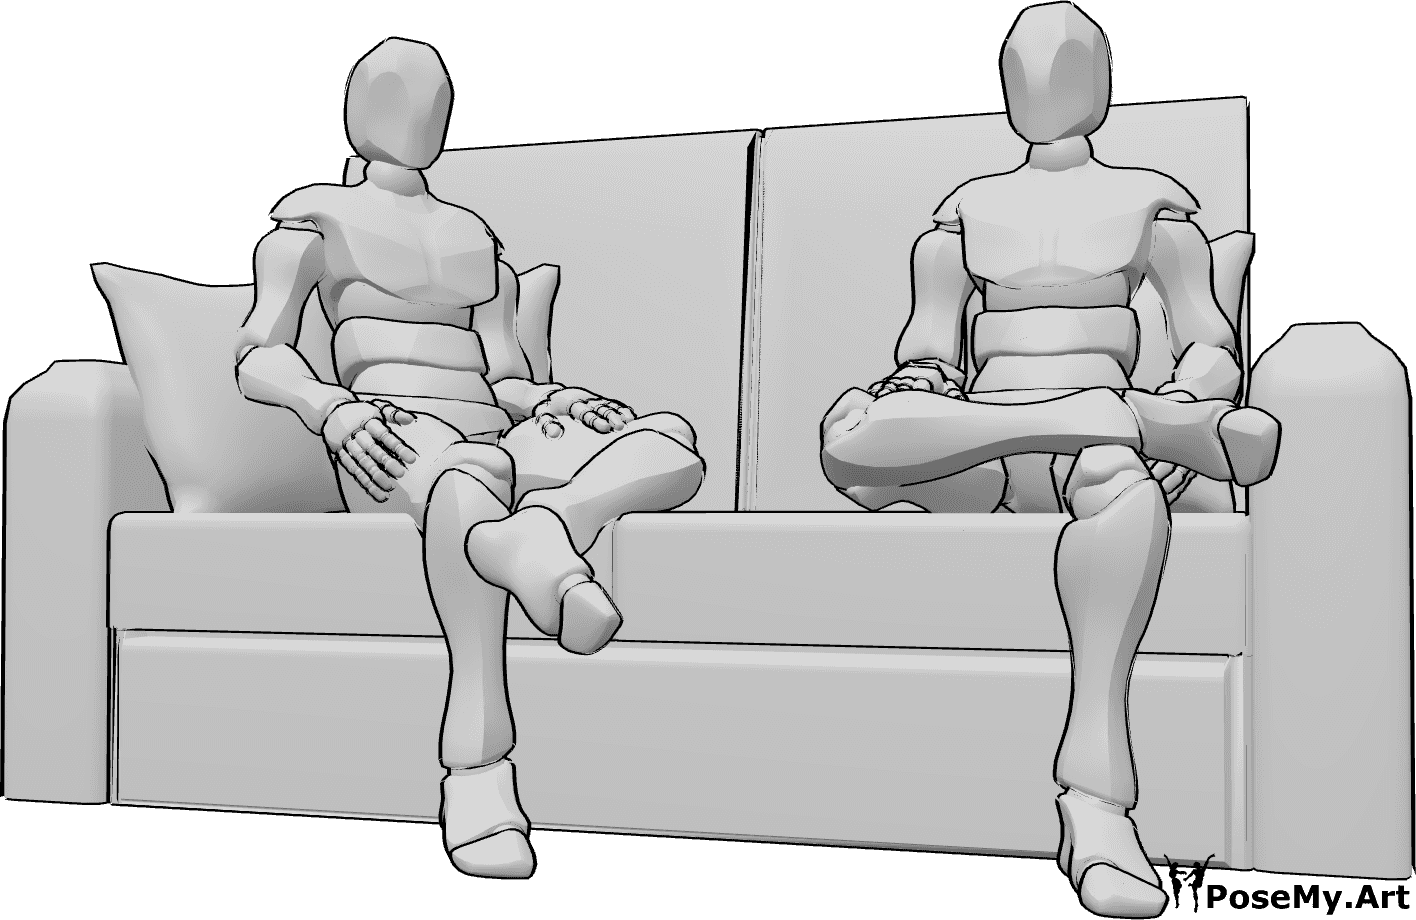 Referencia de poses- Machos sentados - Dos hombres están sentados en el sofá casualmente y mirando hacia adelante